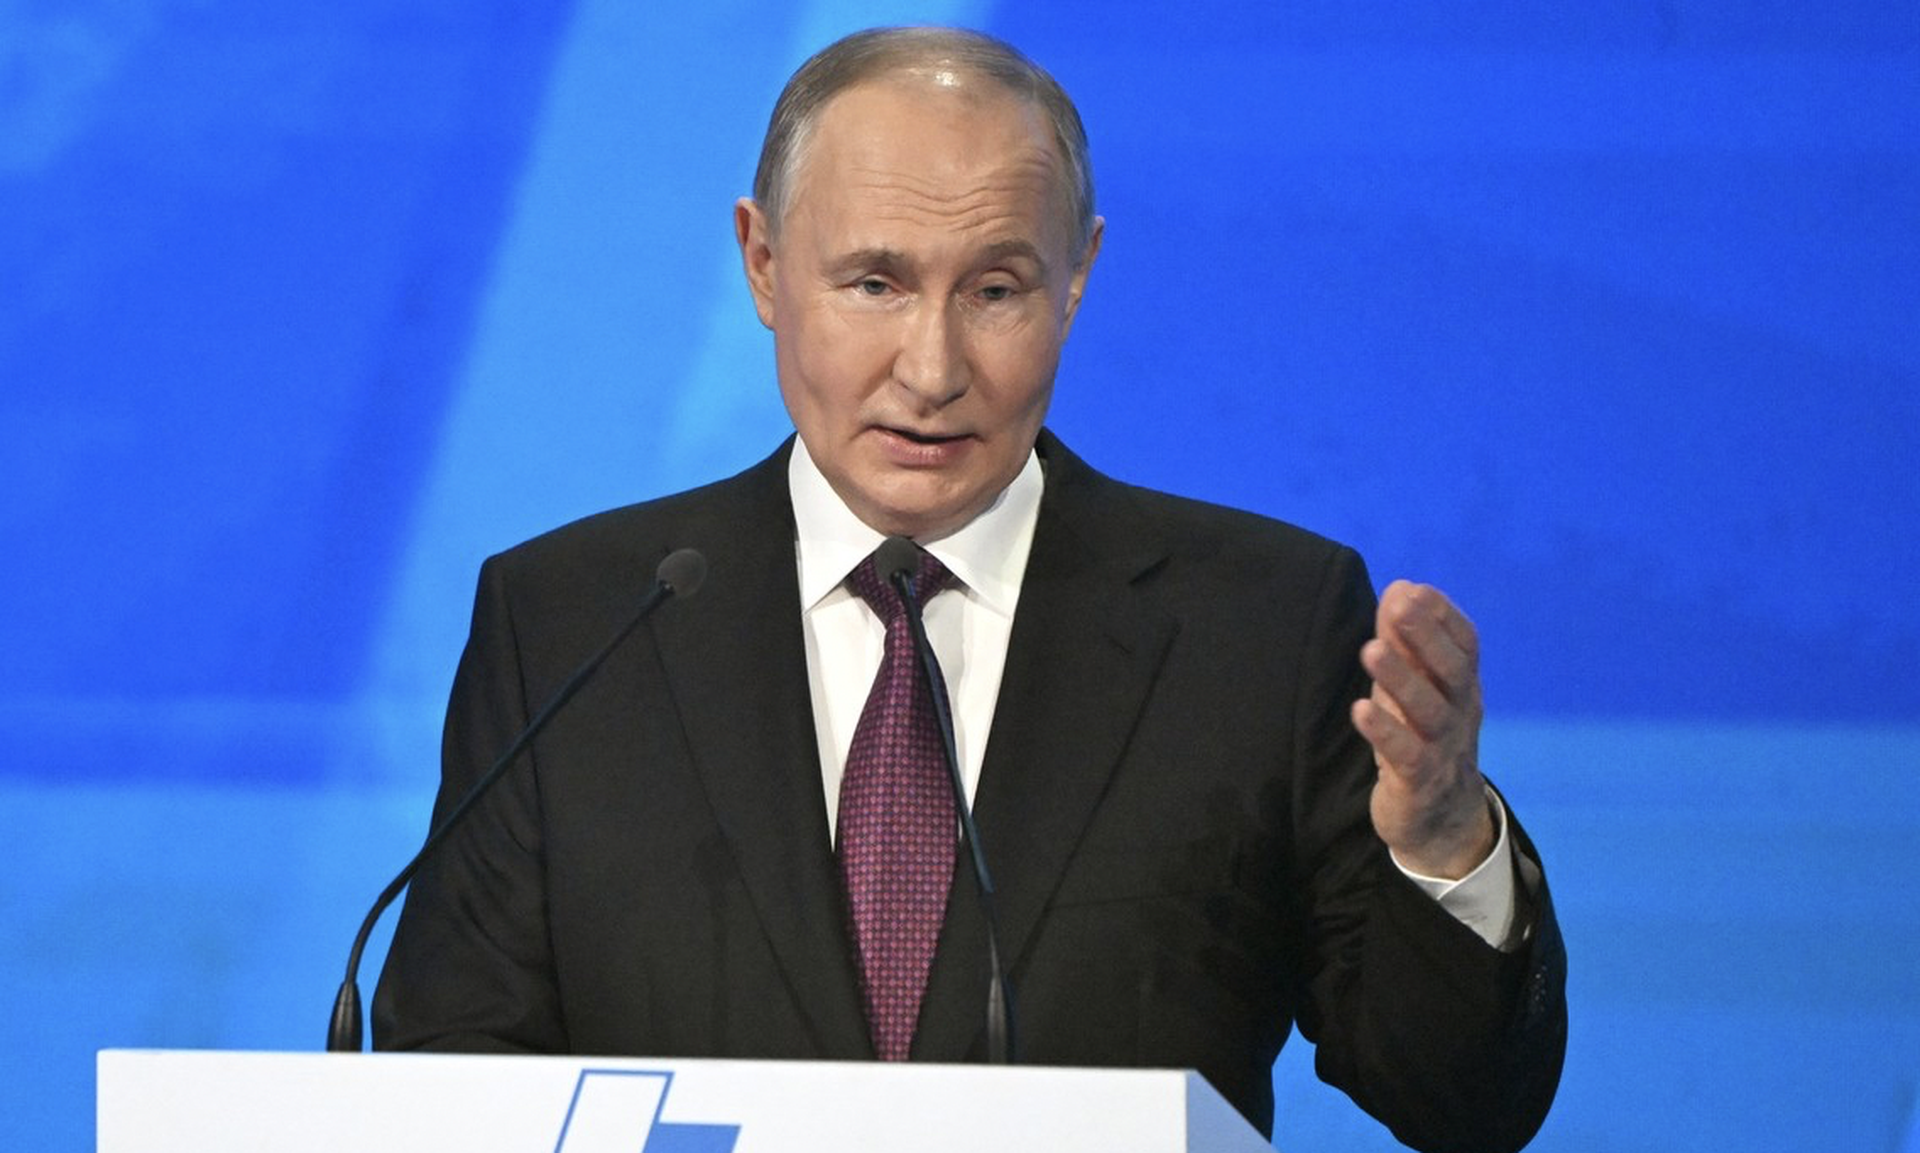 Путин предложил партиям выдвигать ветеранов СВО на выборах всех уровней